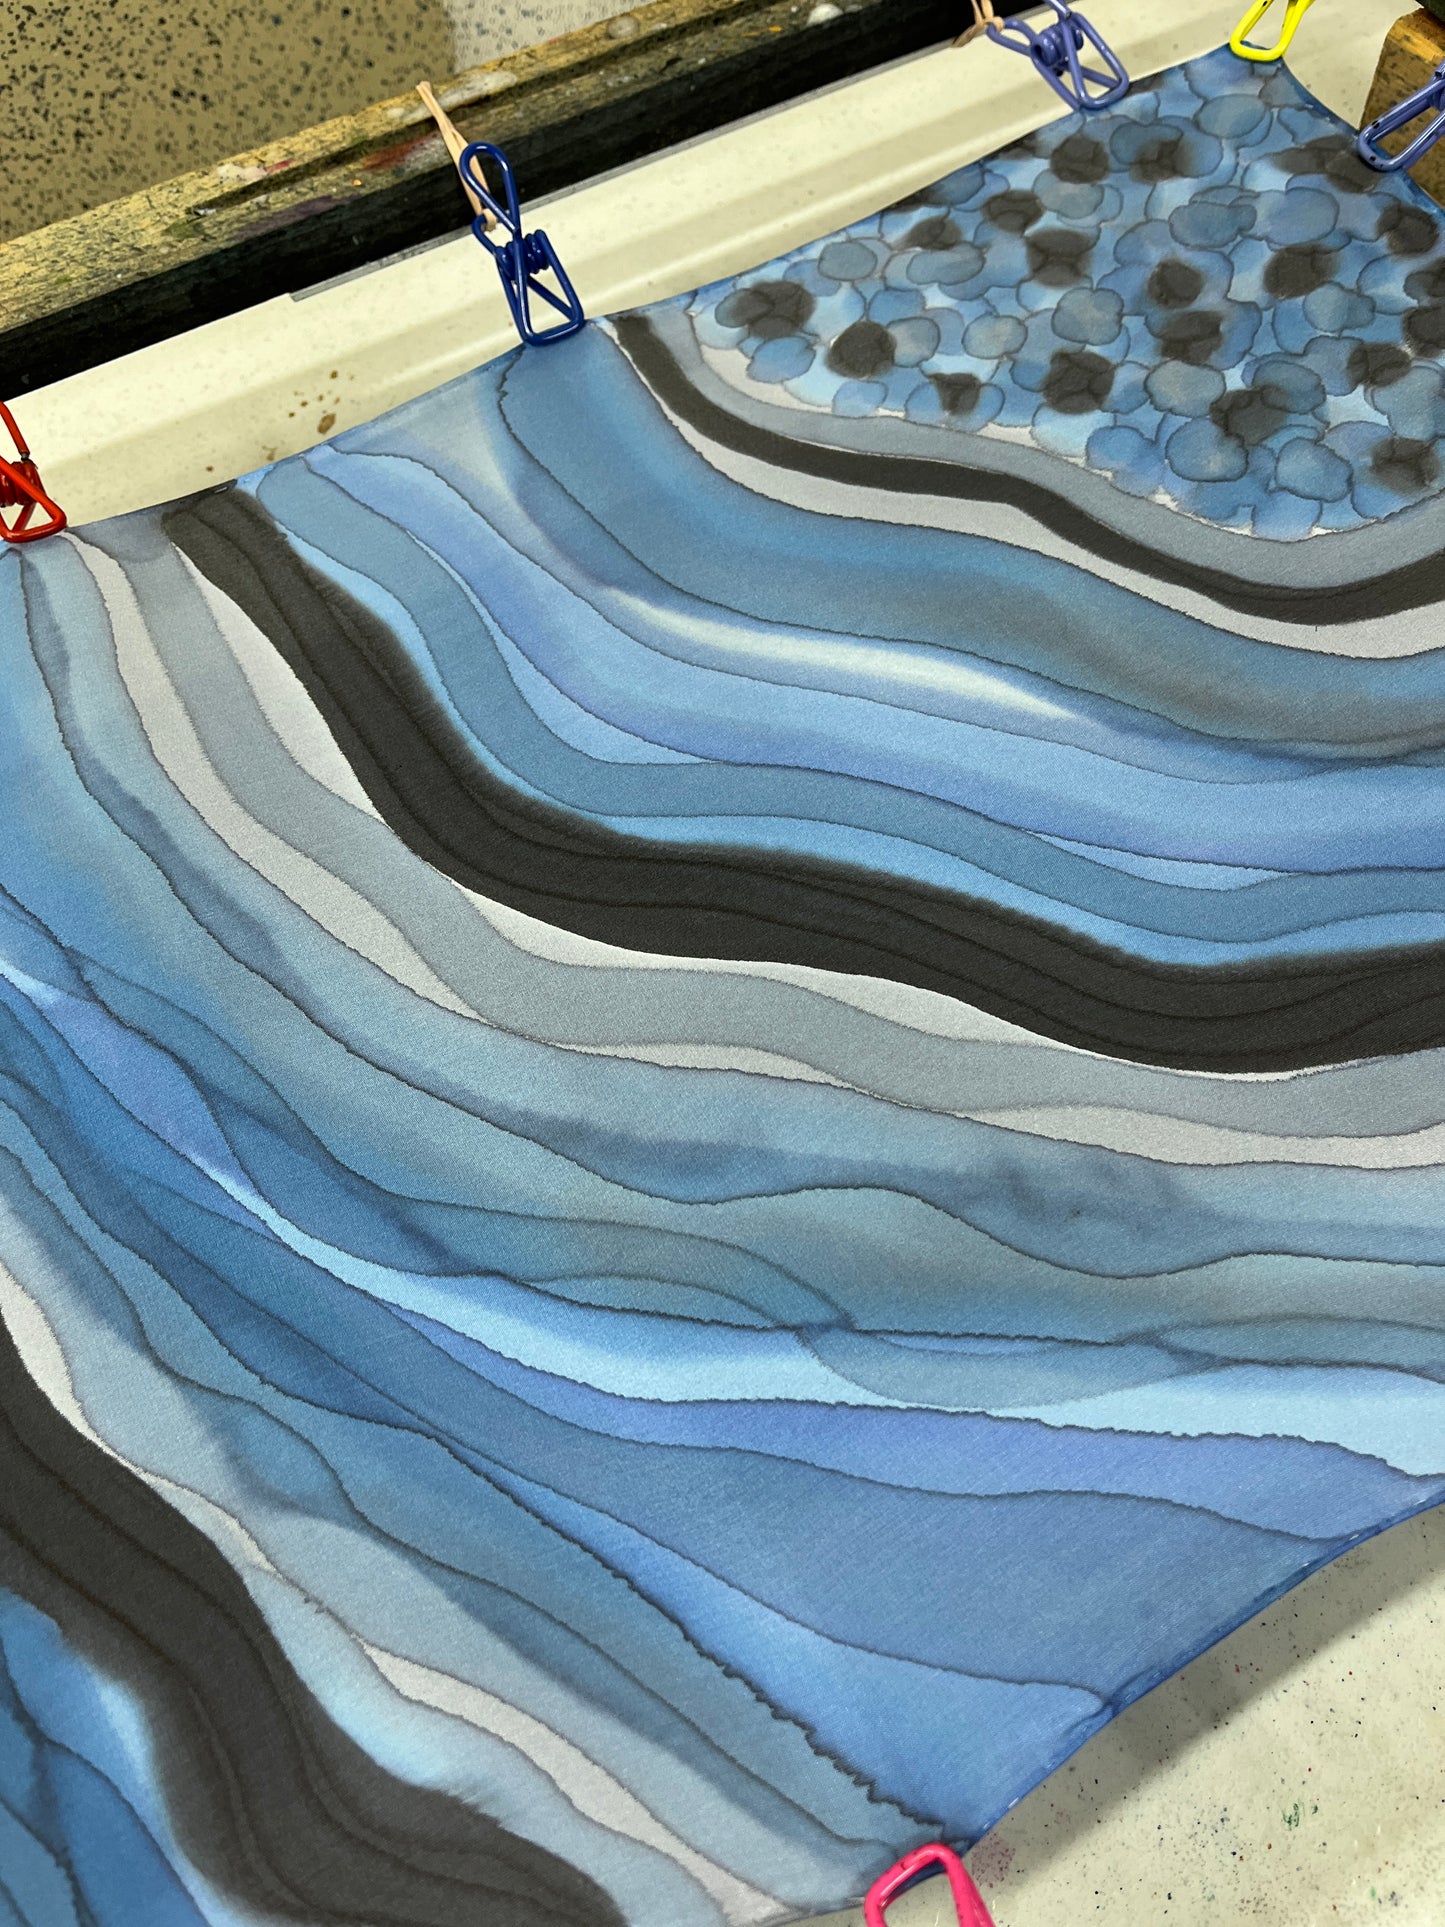 “Sapphire Geode" - Hand-dyed Silk Scarf - $125